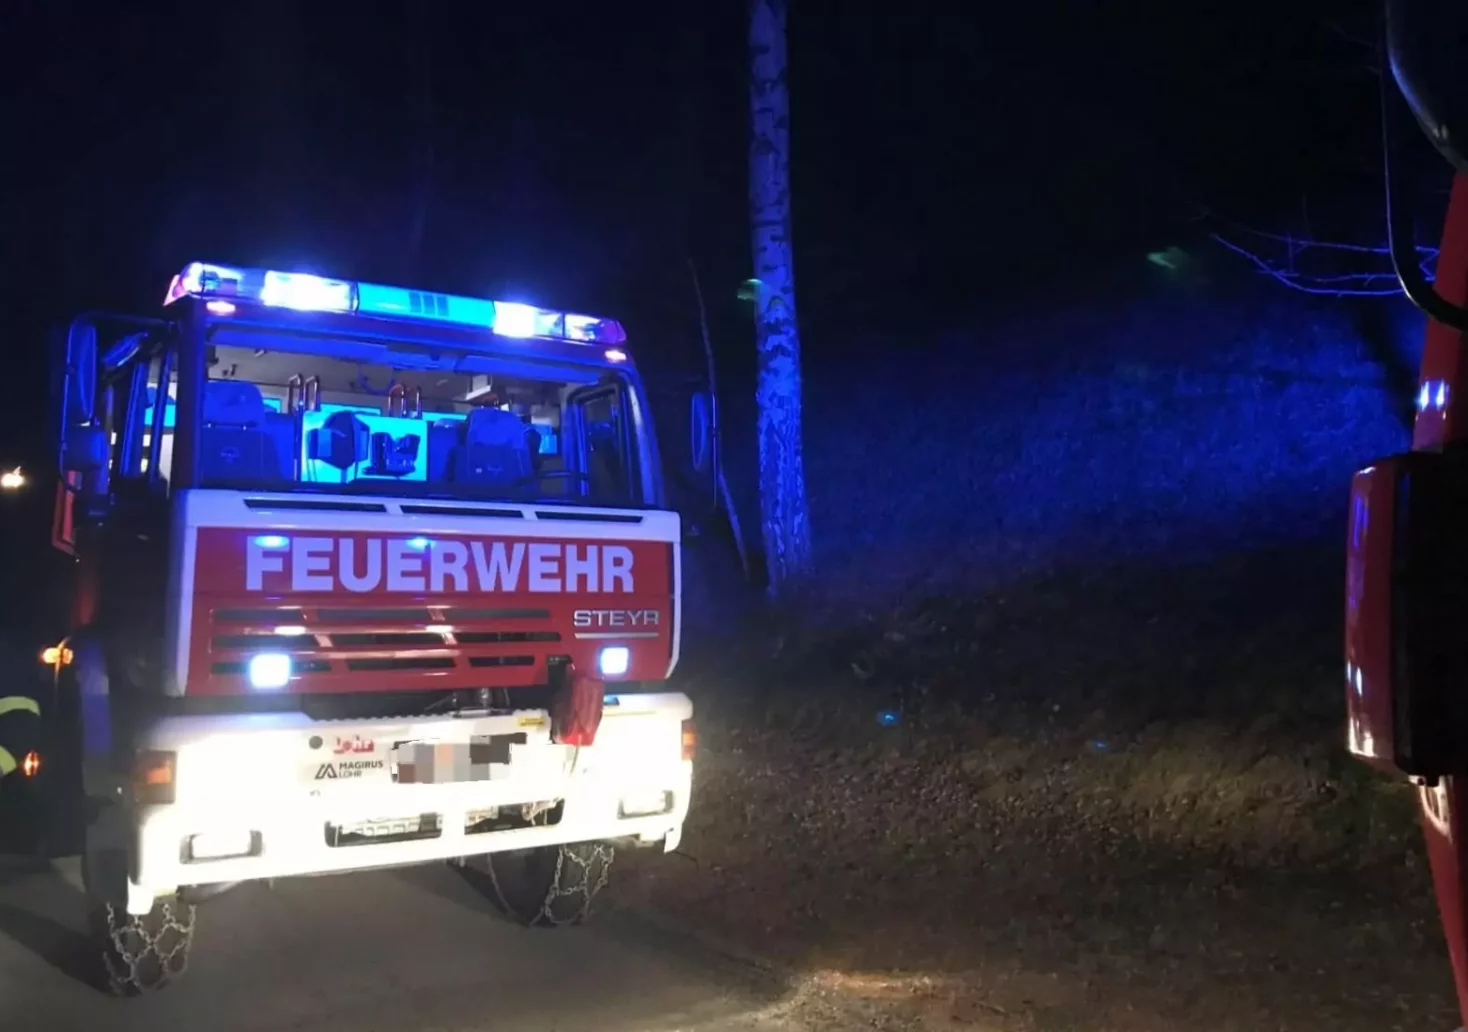 Ein Bild auf 5min.at zeigt ein Einsatzfahrzeug der Feuerwehr bei Nacht.